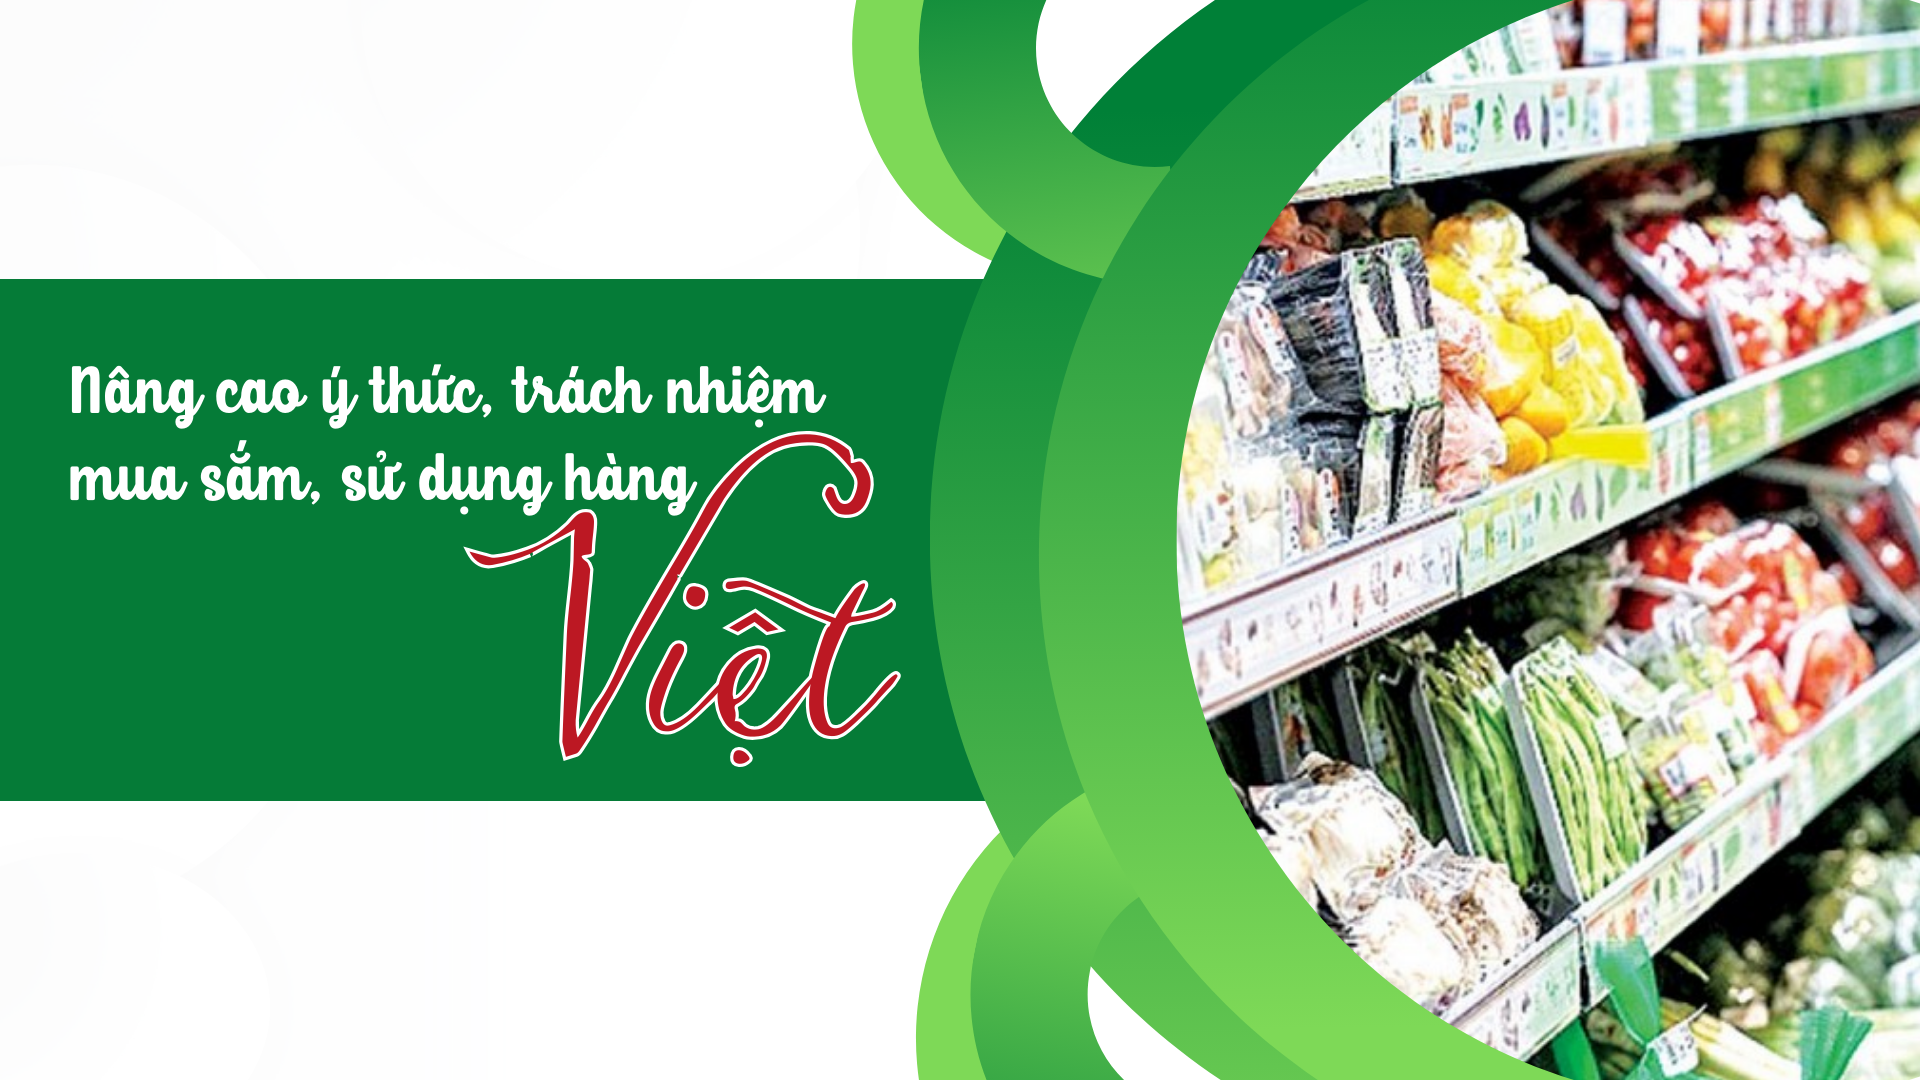 Nâng cao ý thức, trách nhiệm mua sắm, sử dụng hàng Việt